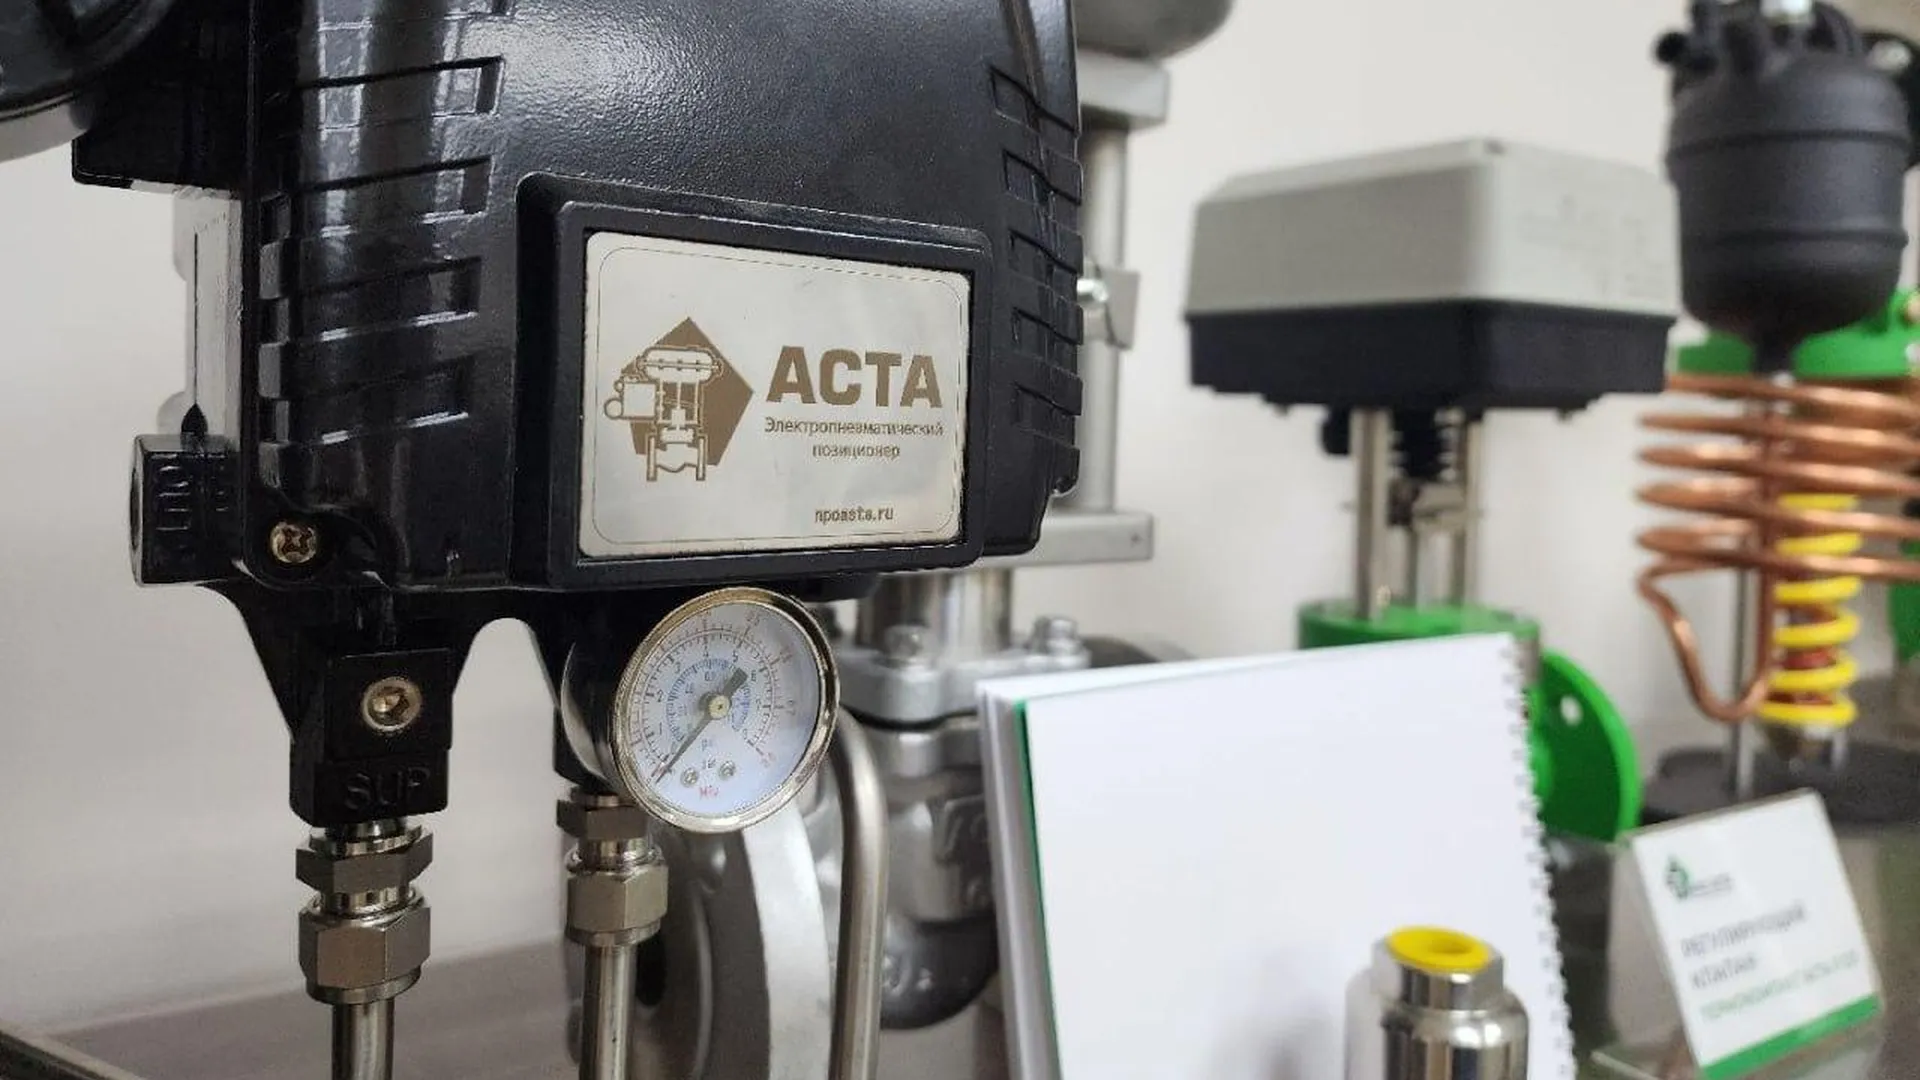 Компания АСТА в Воскресенске возьмет 10 га по программе «Земля за рубль» и откроет литейное производство